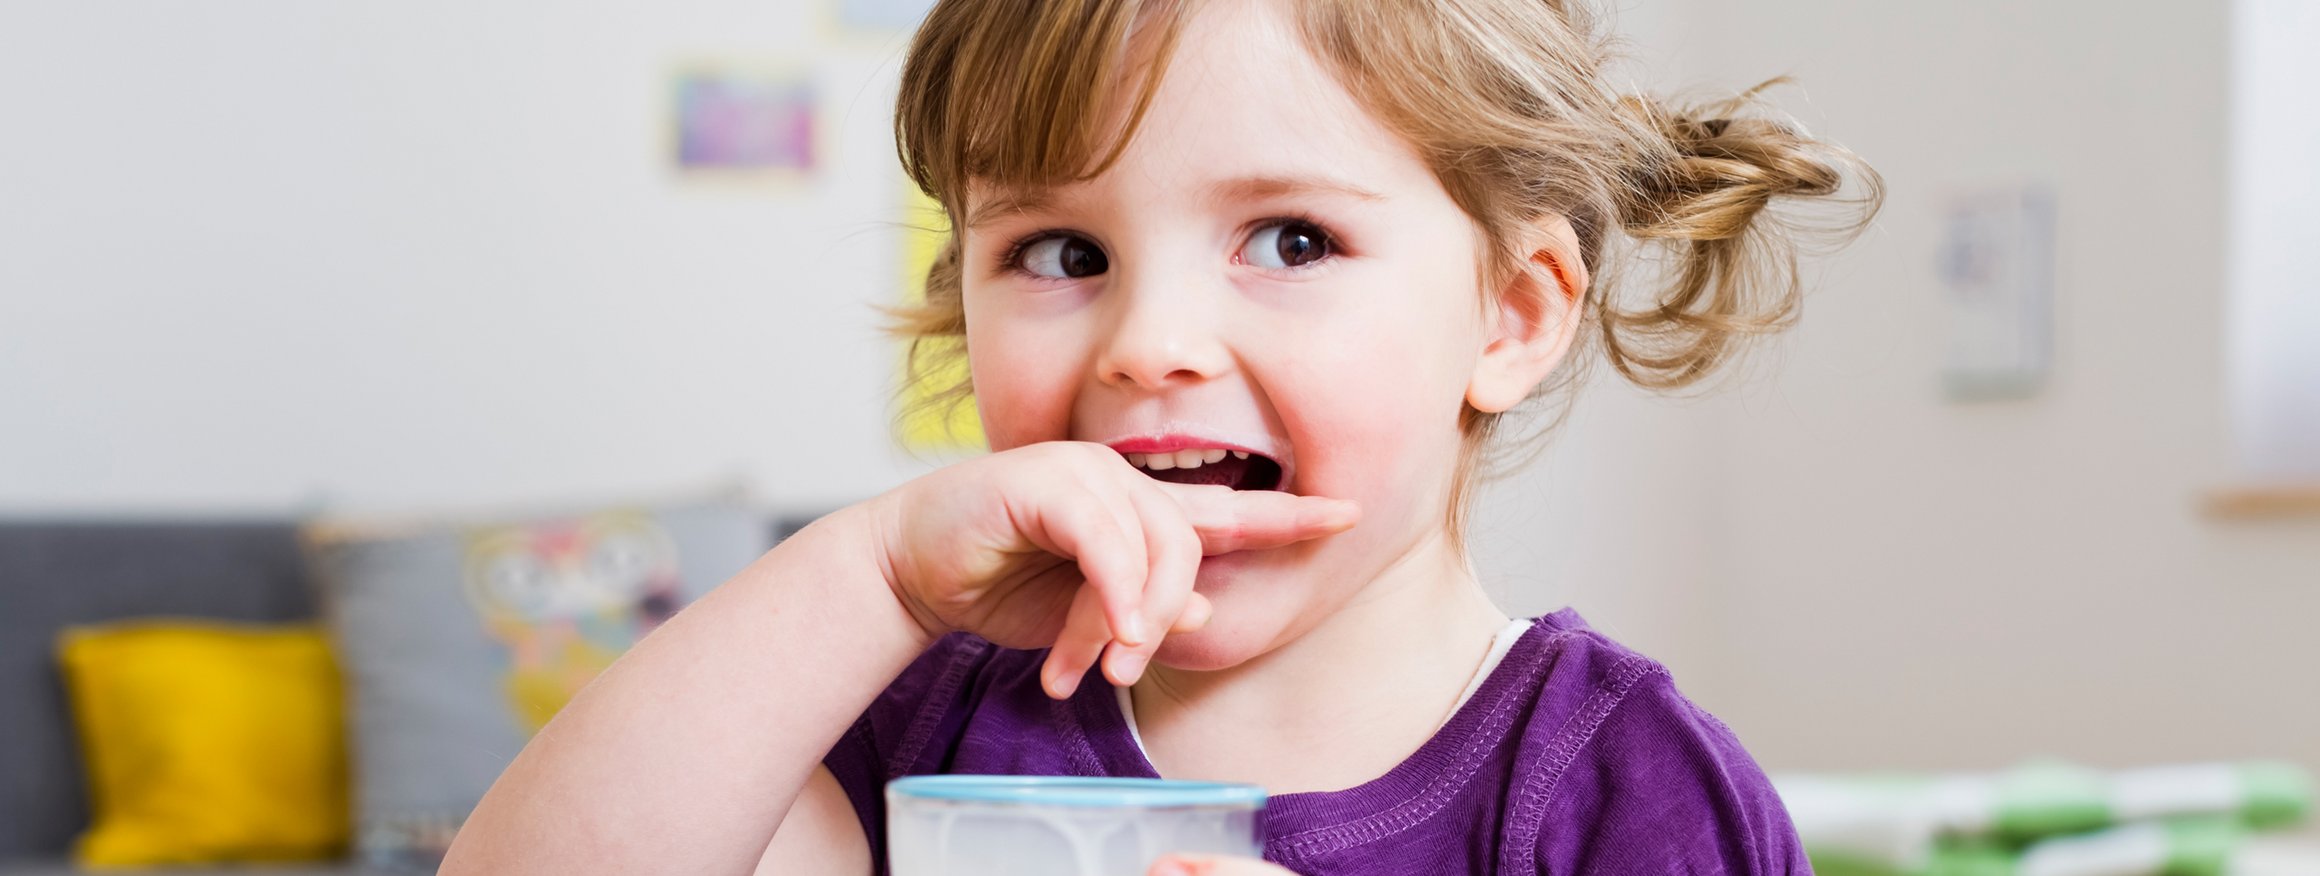 Ein kleines Mädchen hält ein Glas Milch in der Hand und lächelt verschmitzt